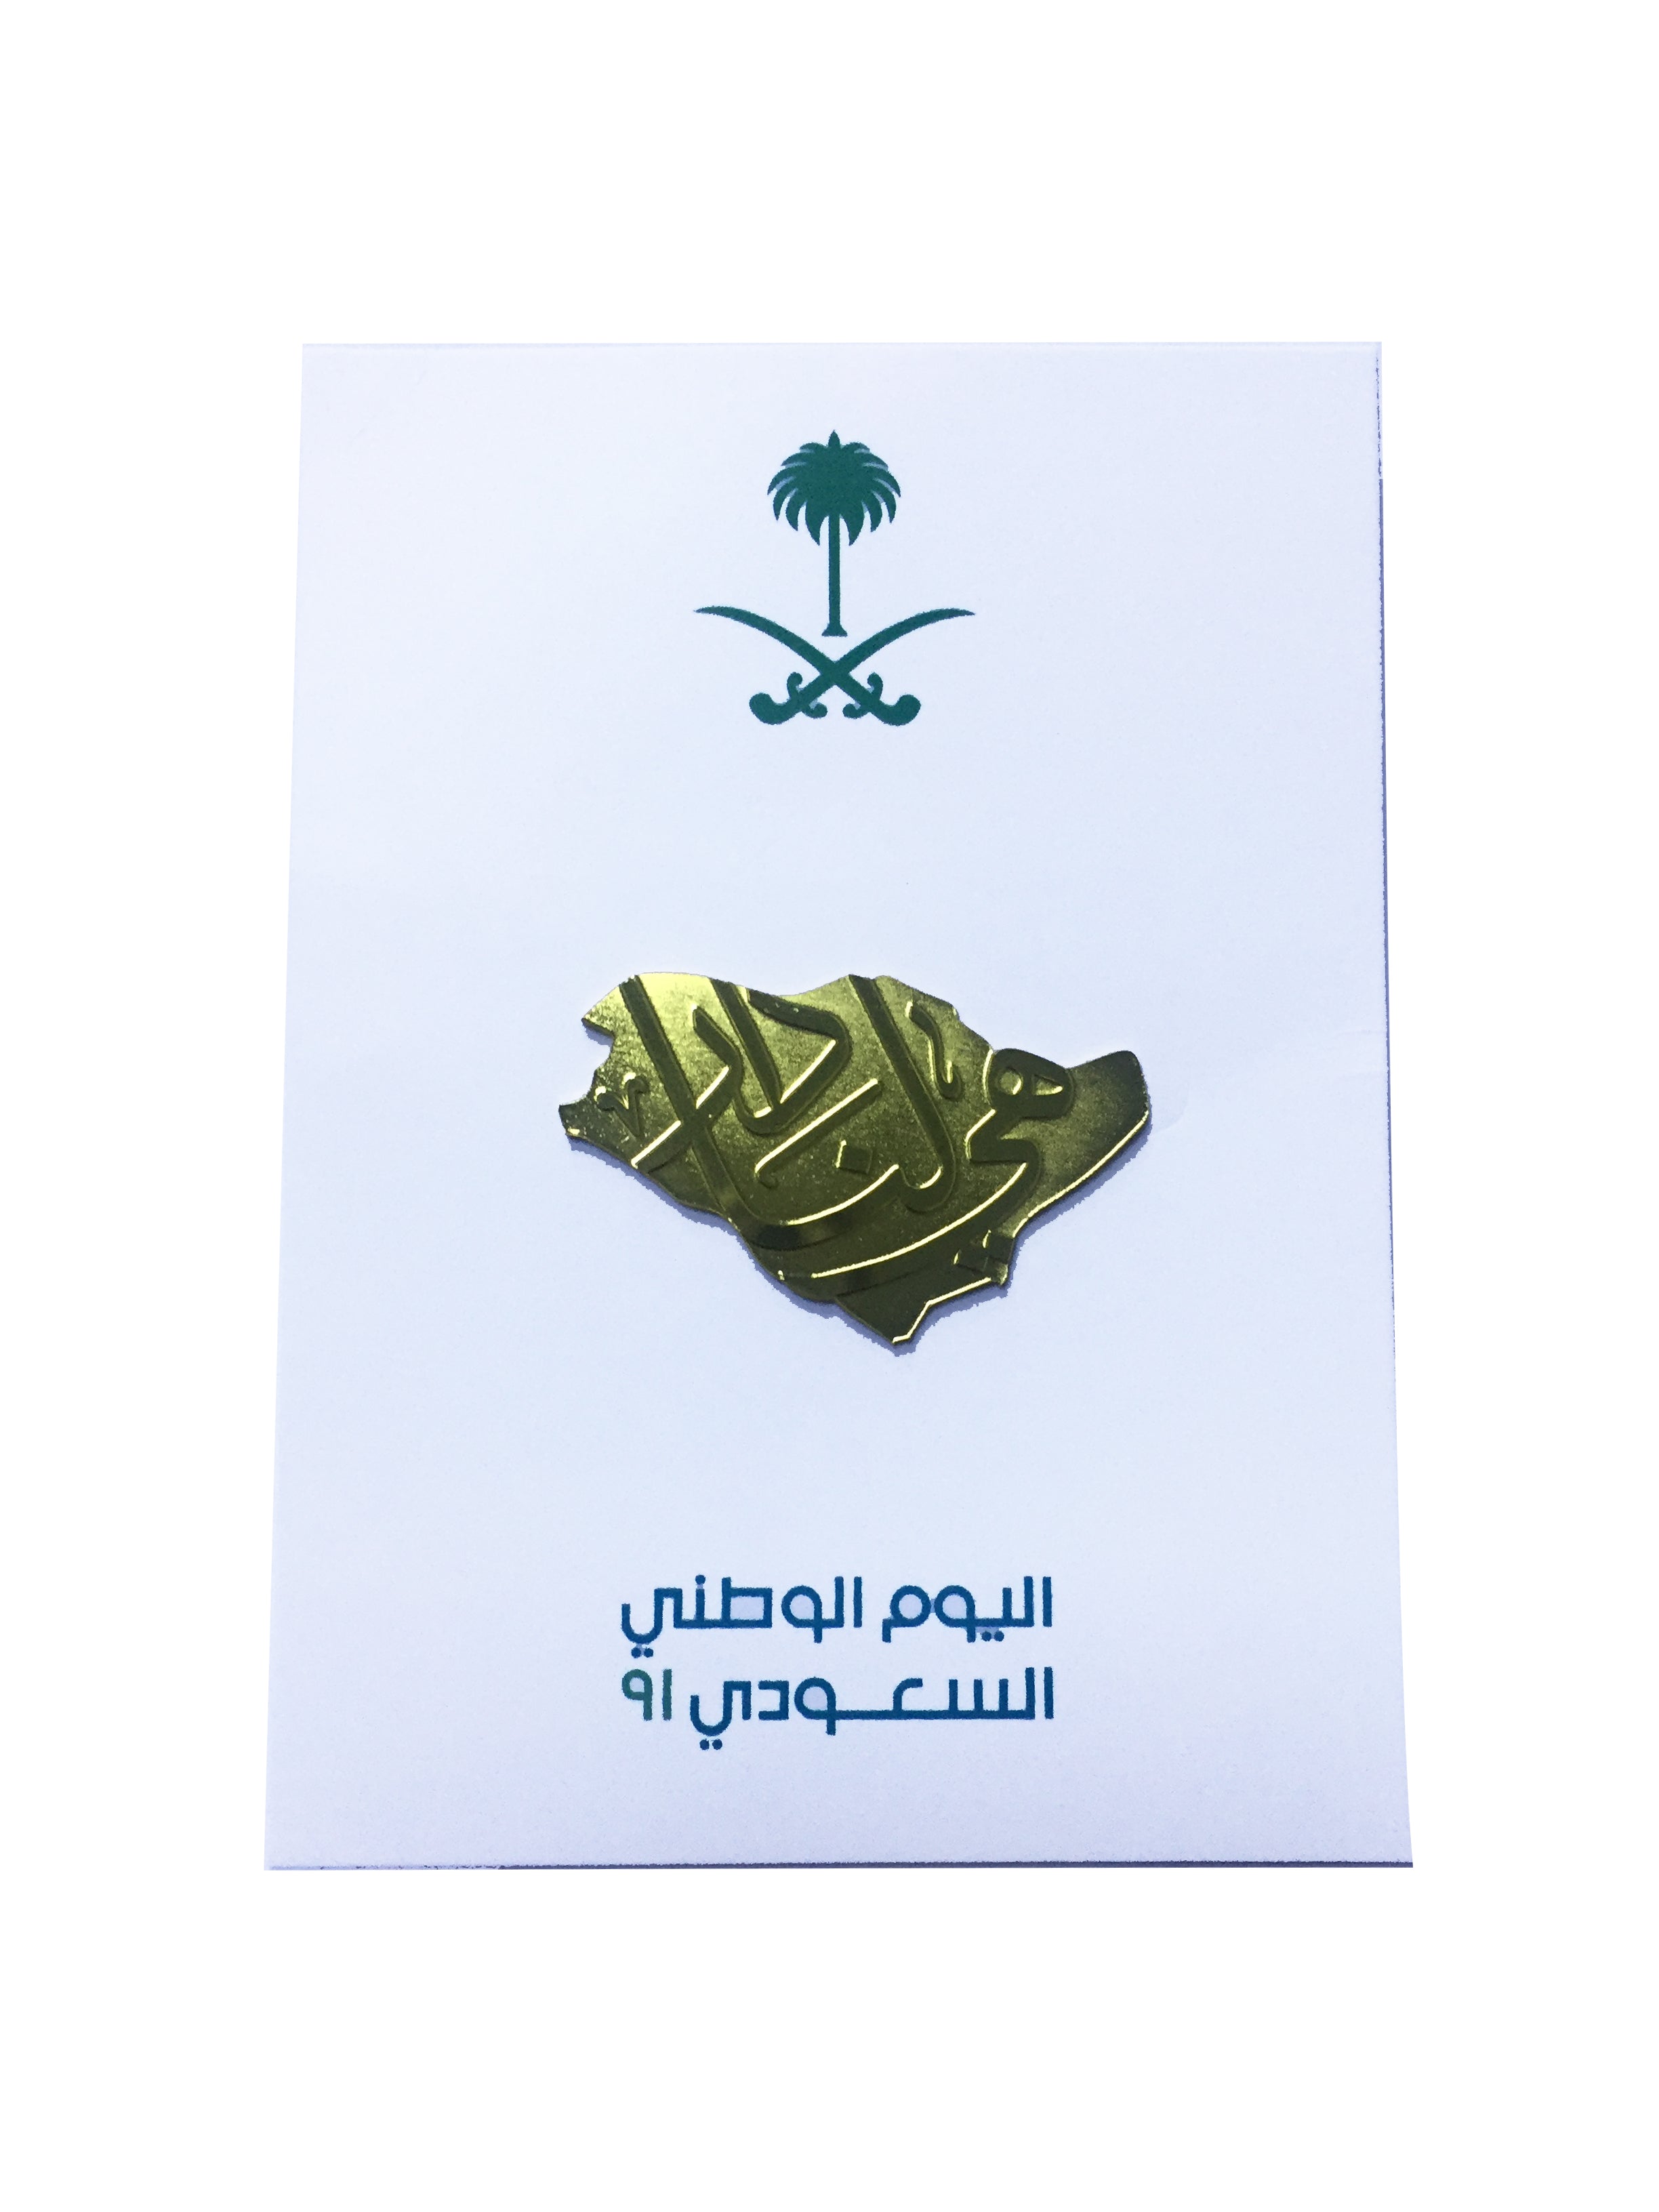 شارة روفاتي المملكة العربية السعودية اليوم الوطني الـ 91 2021 الذهبية